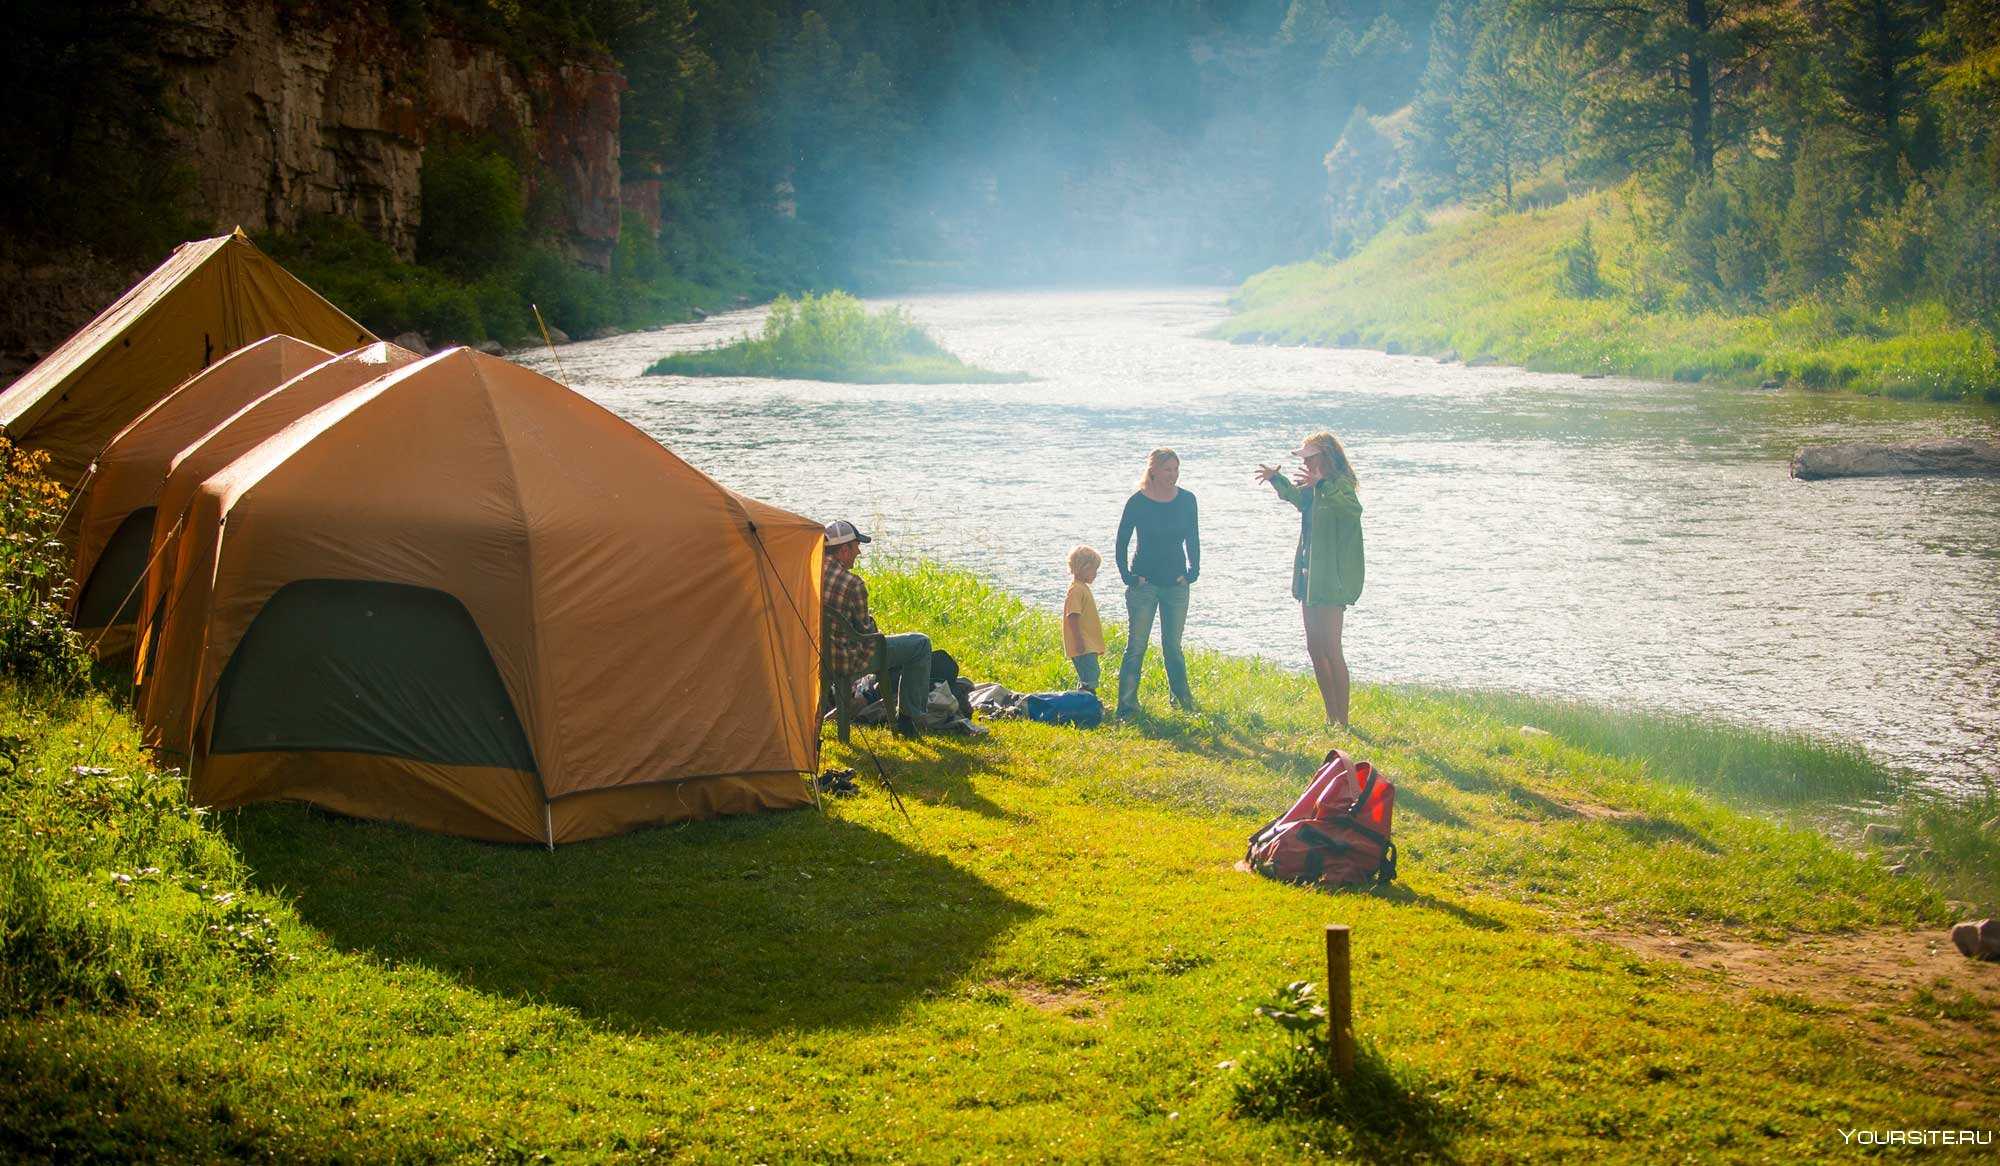 Русское в палатке на природе. Footpath Outdoor Pursuits палатка. Палаточный лагерь Camp 2050. Палаточный кемпинг Висимские Поляны. Место для отдыха на природе.